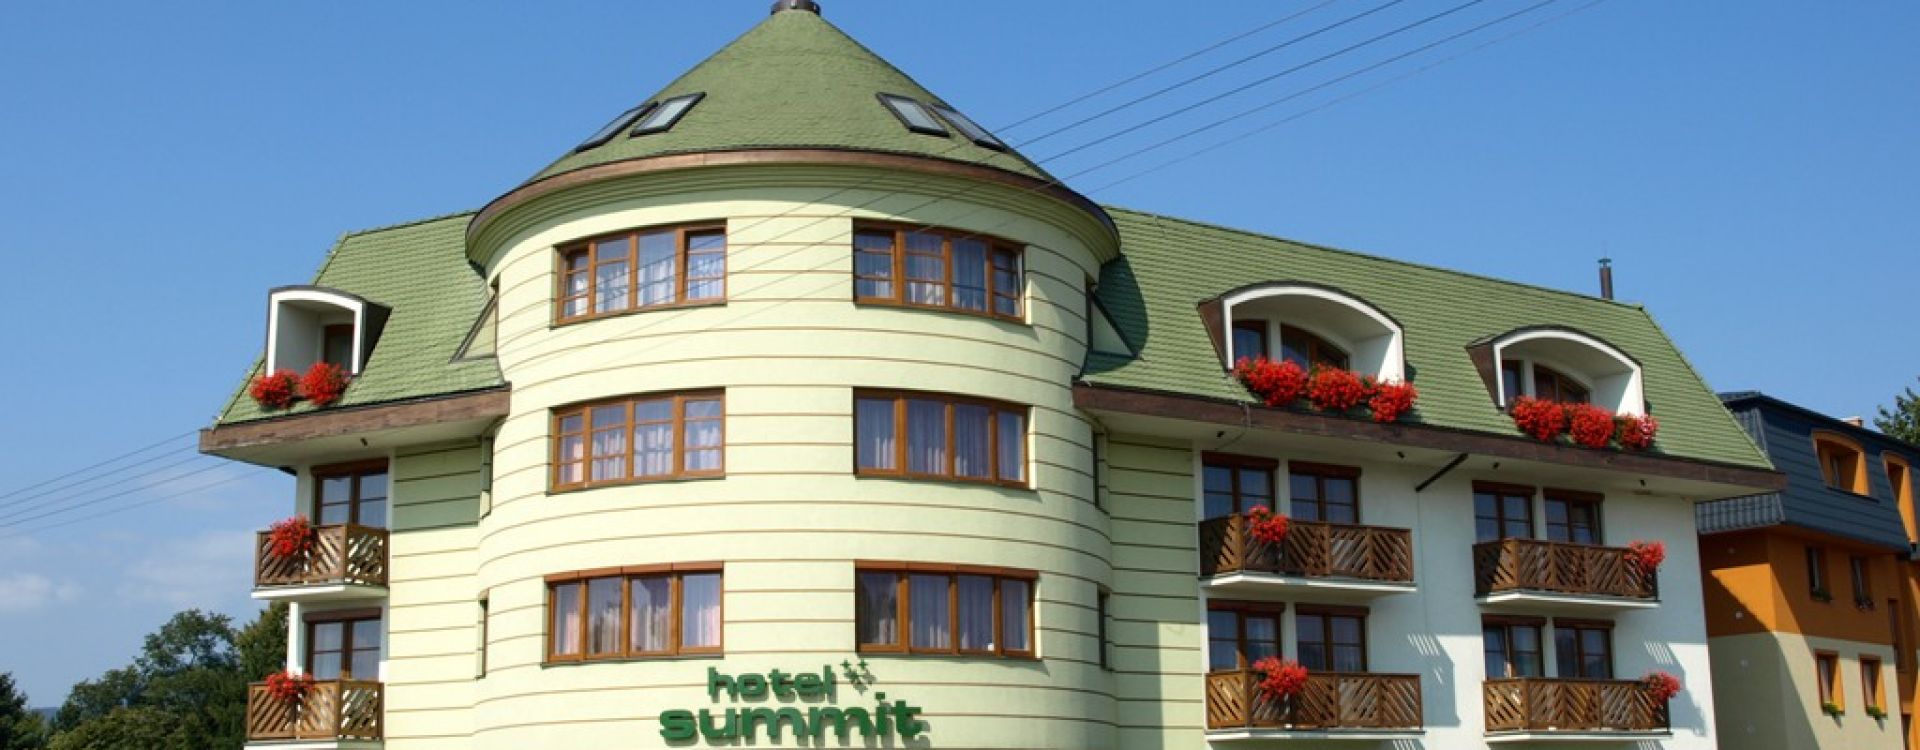 Hotel Summit***Bešeňová - Podzimní výhodná nabídka 2-4 noci